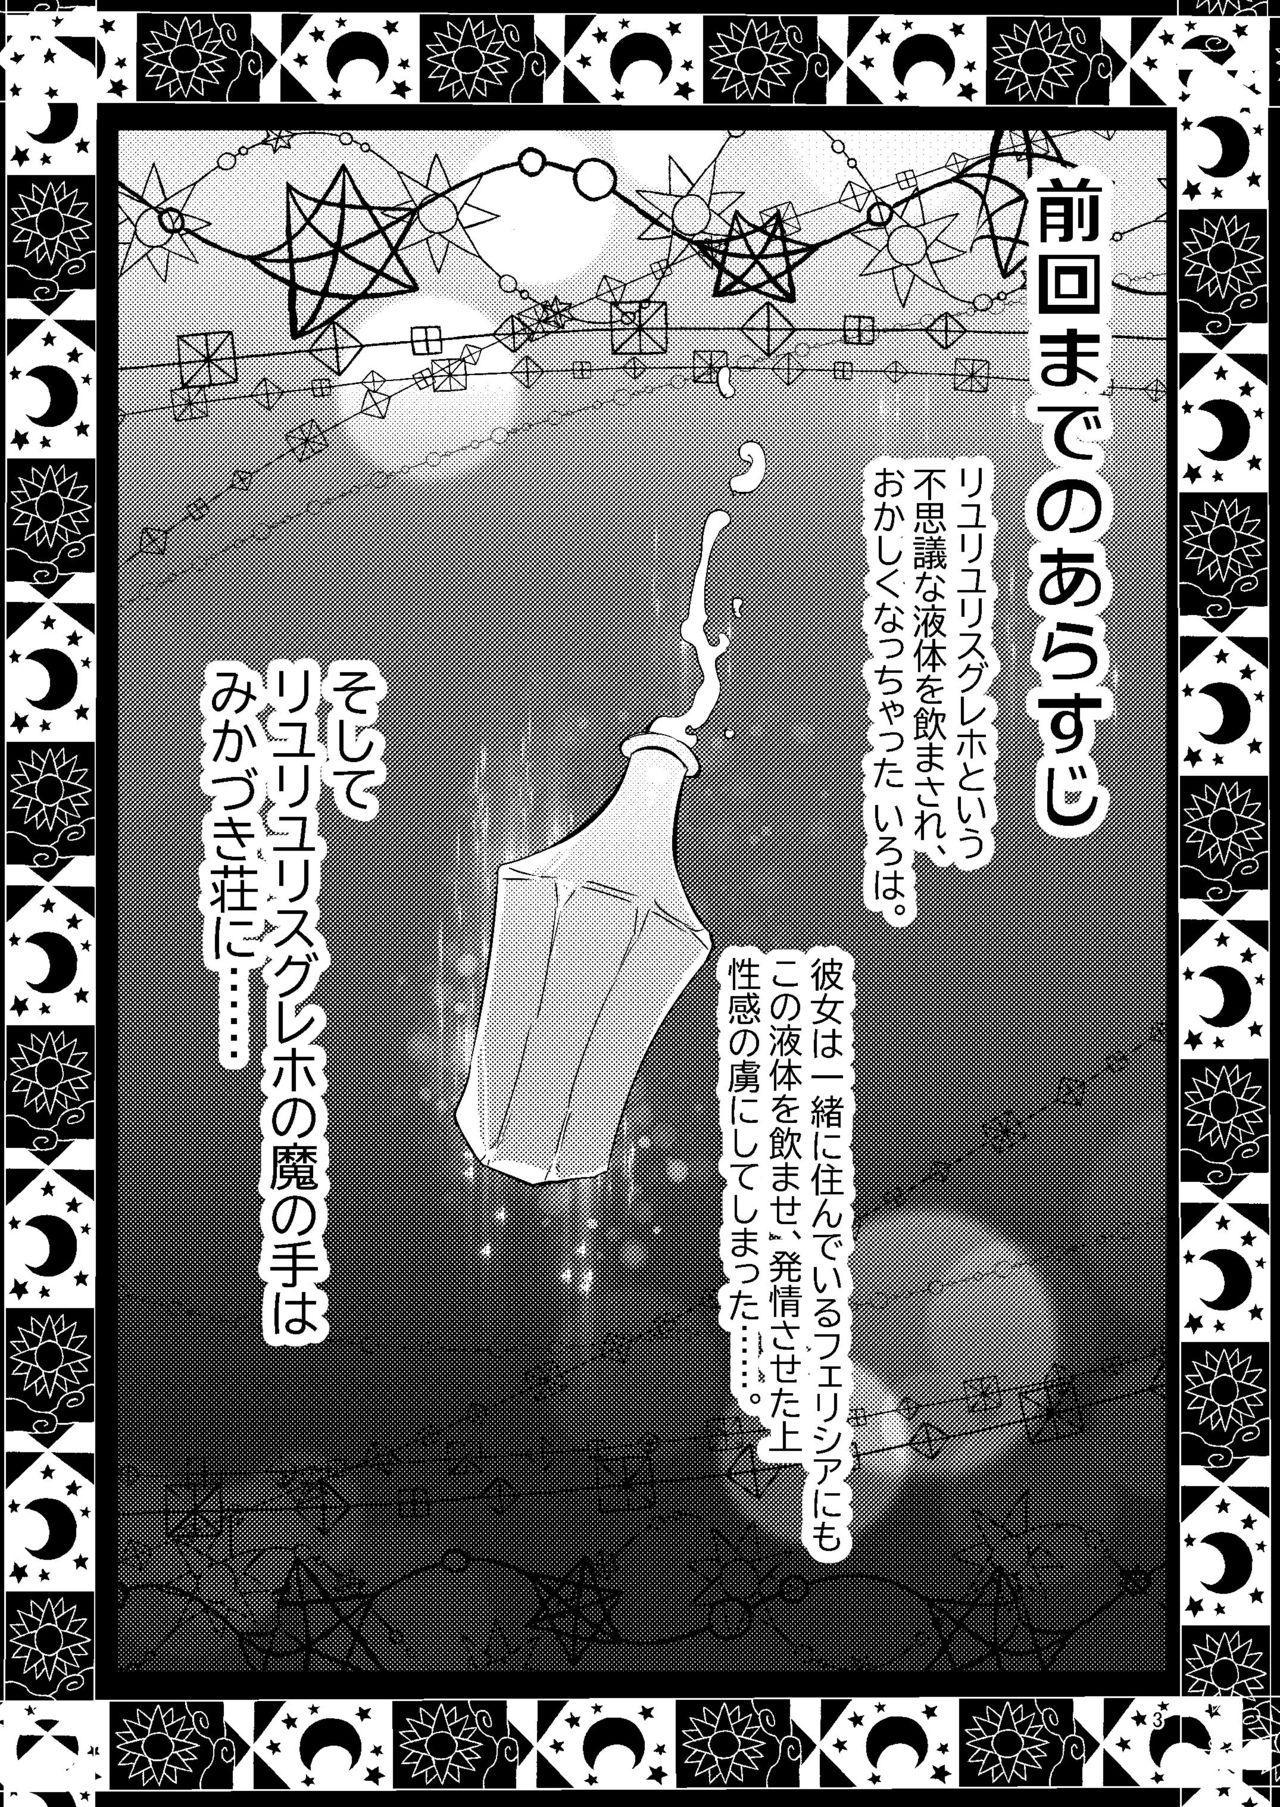 Tan Riyuriyu Risugureho no Uwasa 3 - Puella magi madoka magica side story magia record Beautiful - Page 2